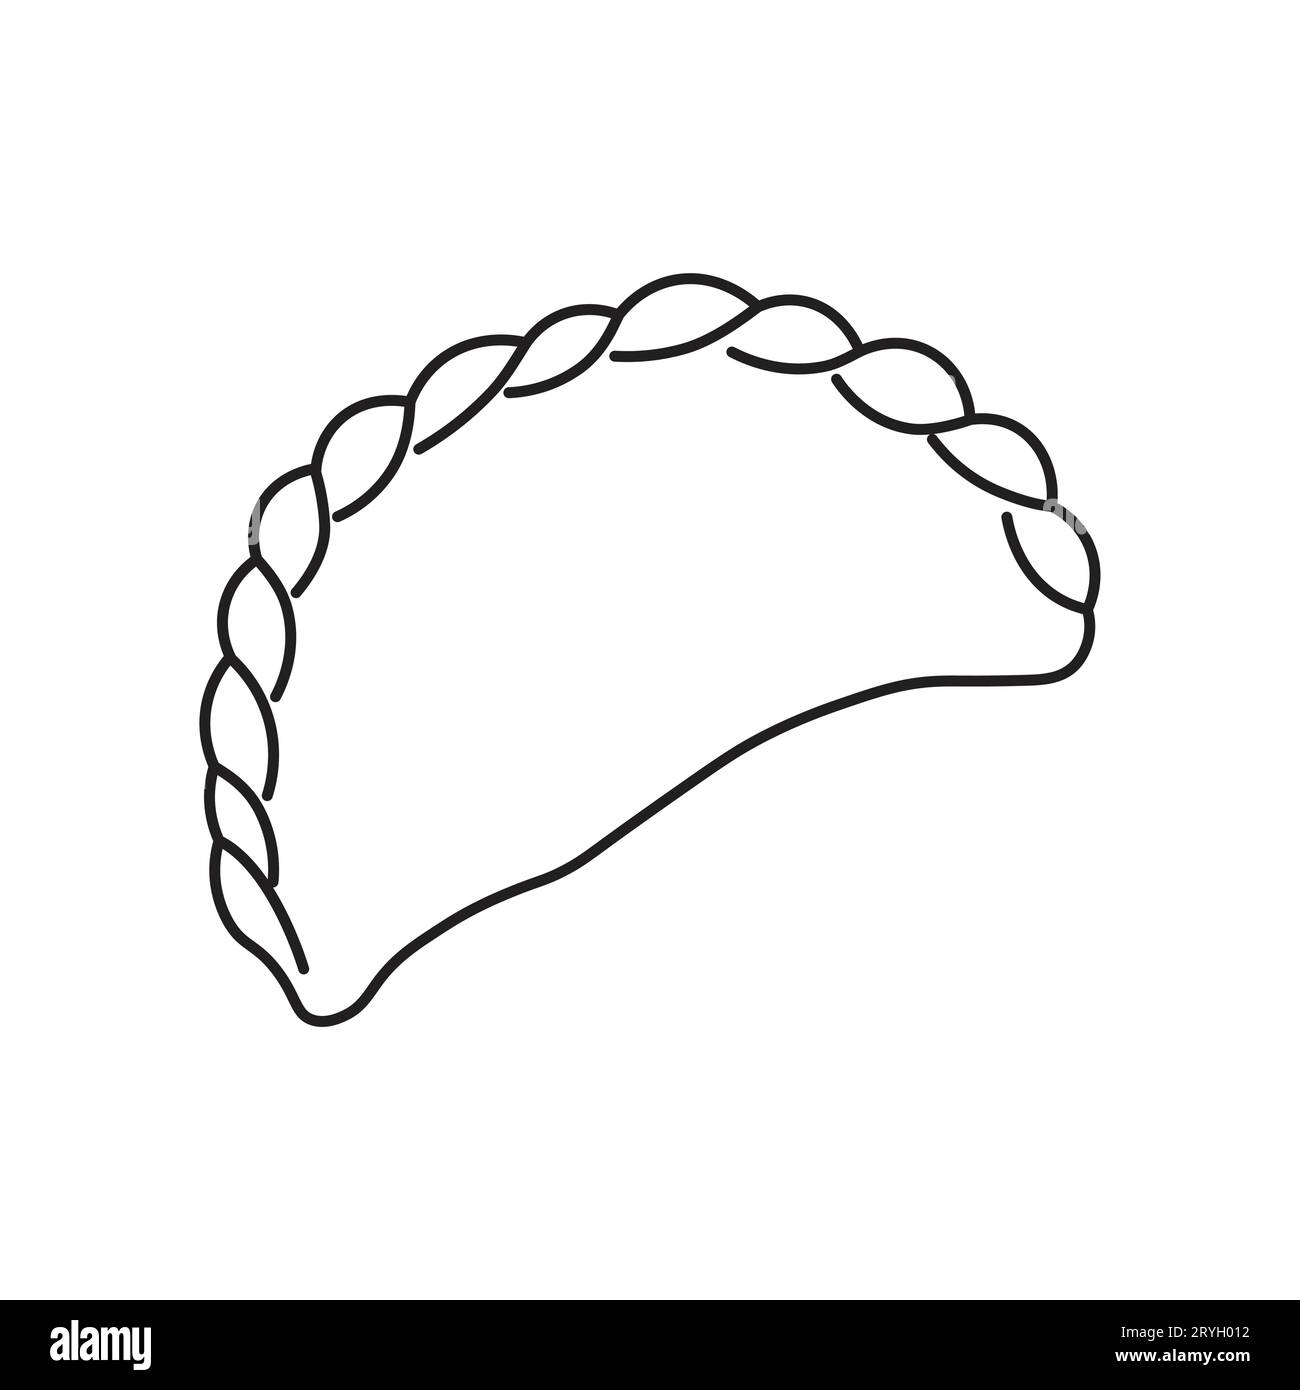 Dumpling-Symbol für Food-Apps und Websites. Isolieren auf weißem Hintergrund. Vektorillustration Stock Vektor